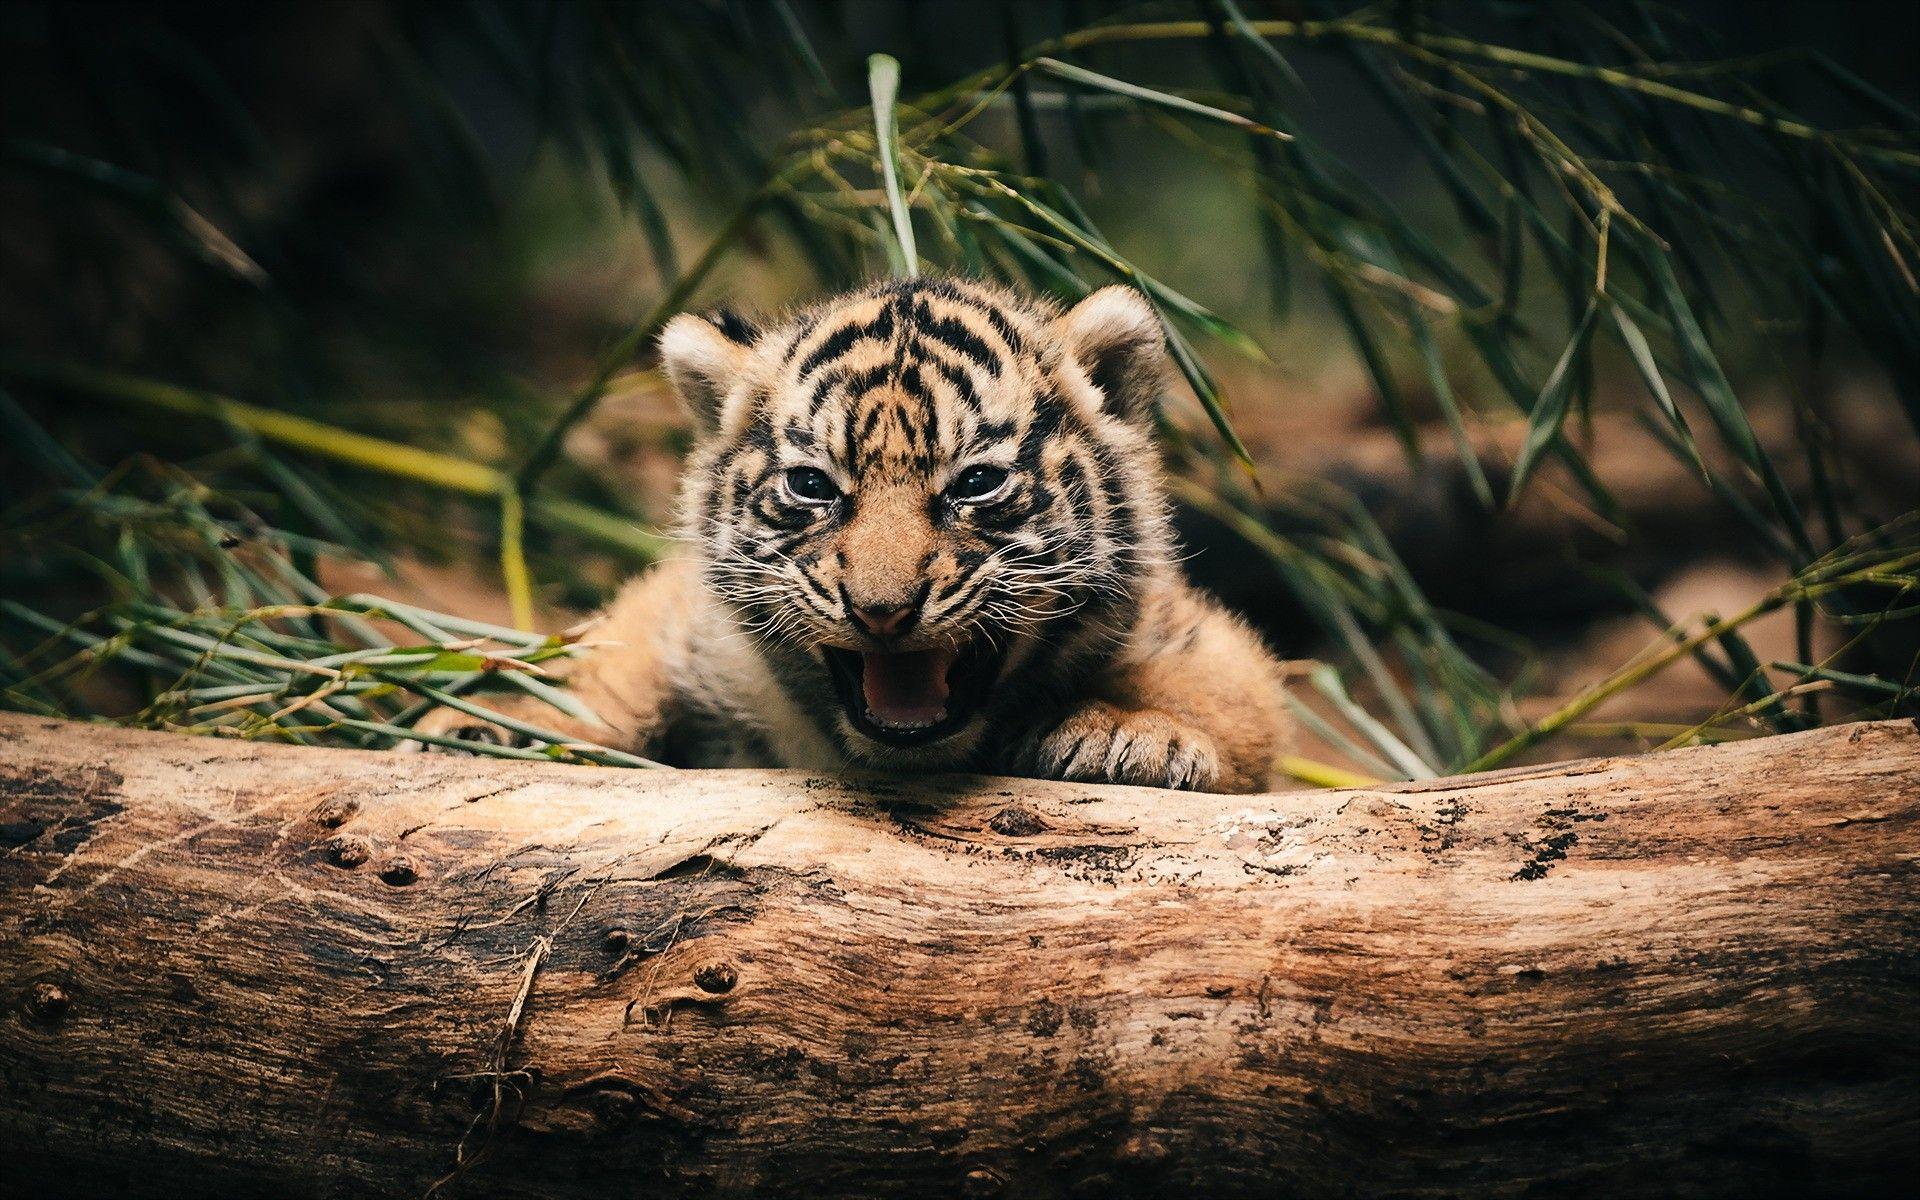 Tiger Cub Wallpaper. HD Animals. Tiger wallpaper, Tiger cub, Animals